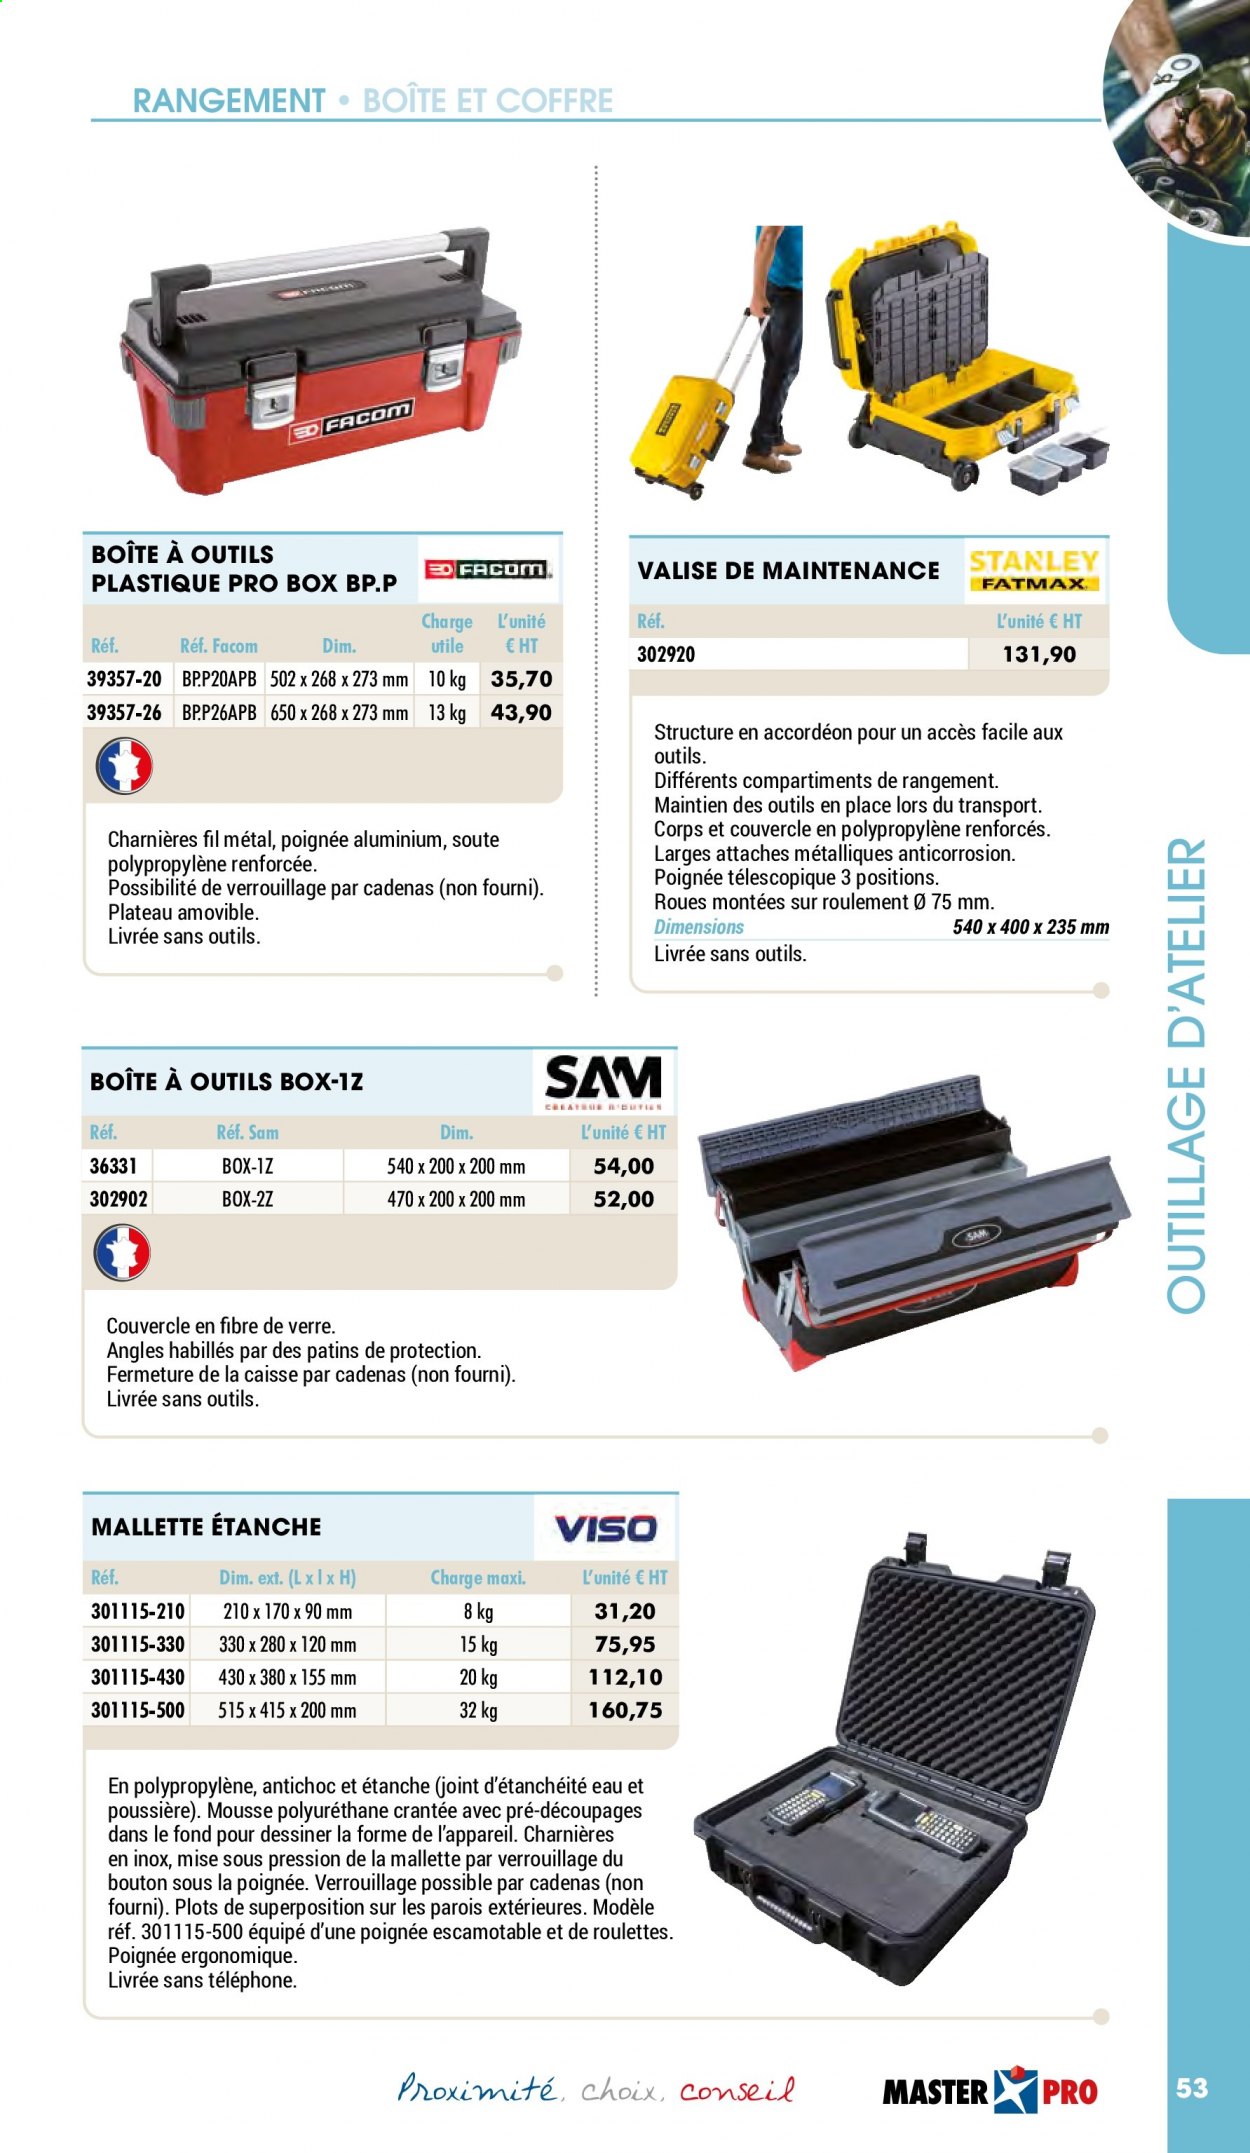 thumbnail - Catalogue Master Pro - 01/01/2021 - 31/12/2021 - Produits soldés - valise, mousse de polyuréthane, boîte à outils. Page 55.